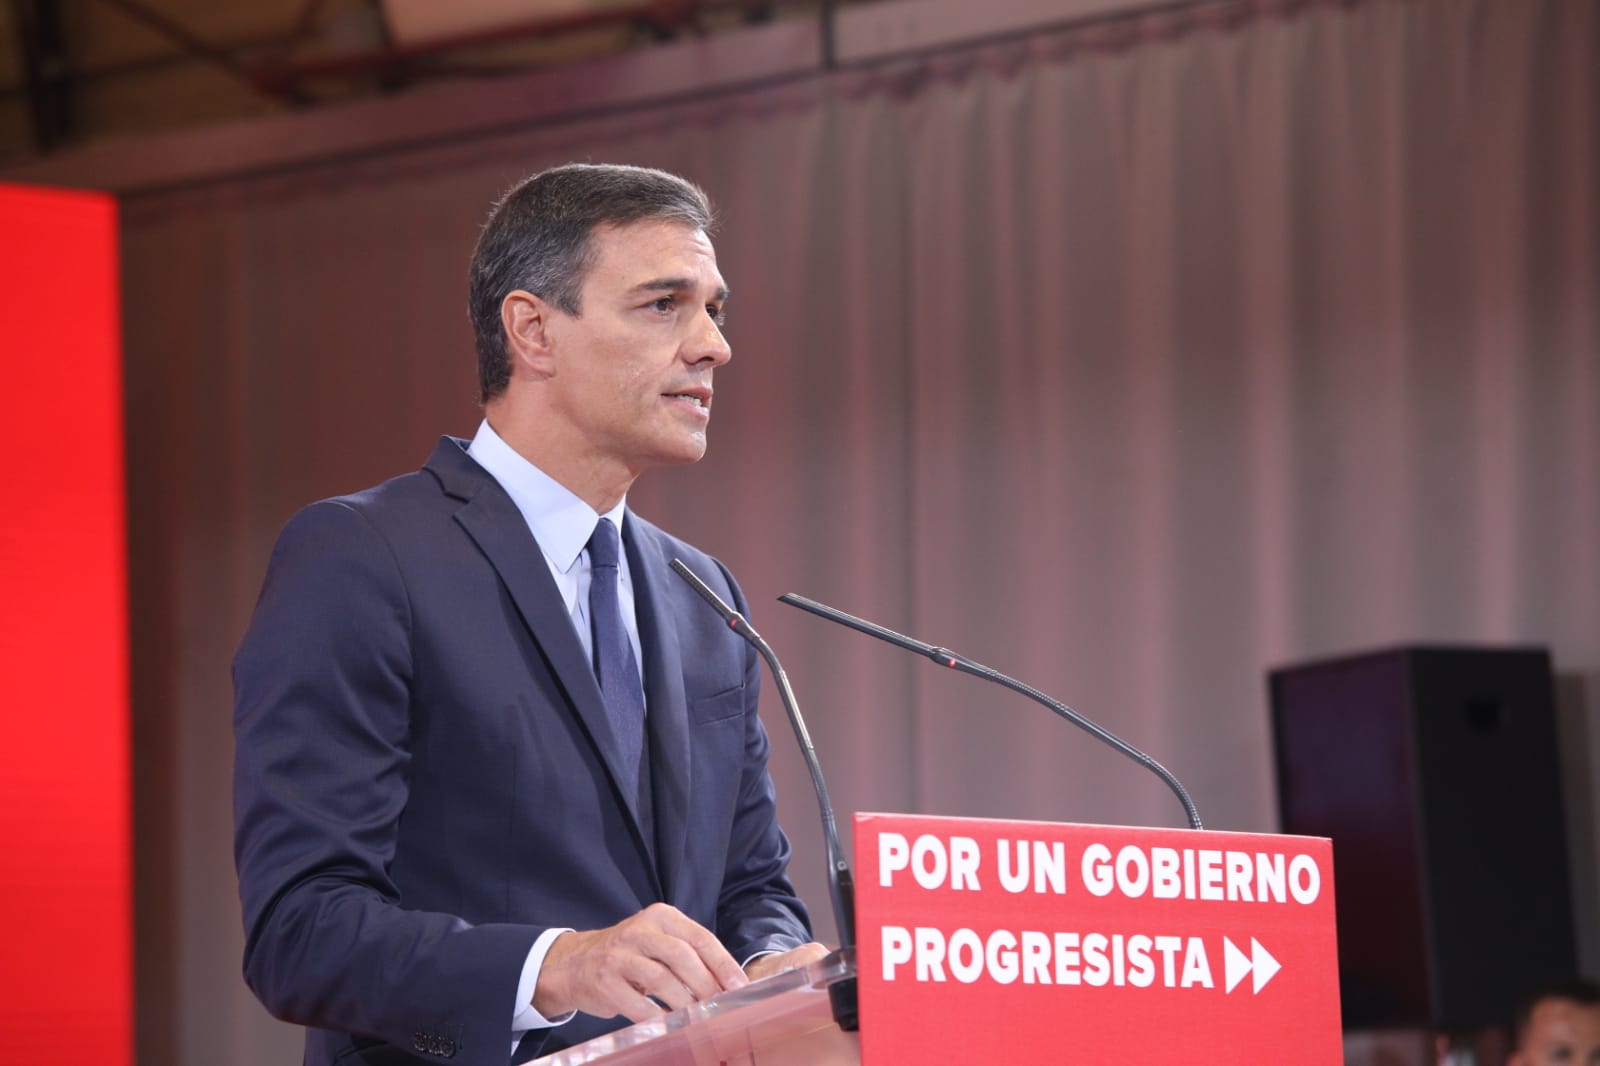 El programa para convencer a Podemos: cargos públicos y una reforma laboral